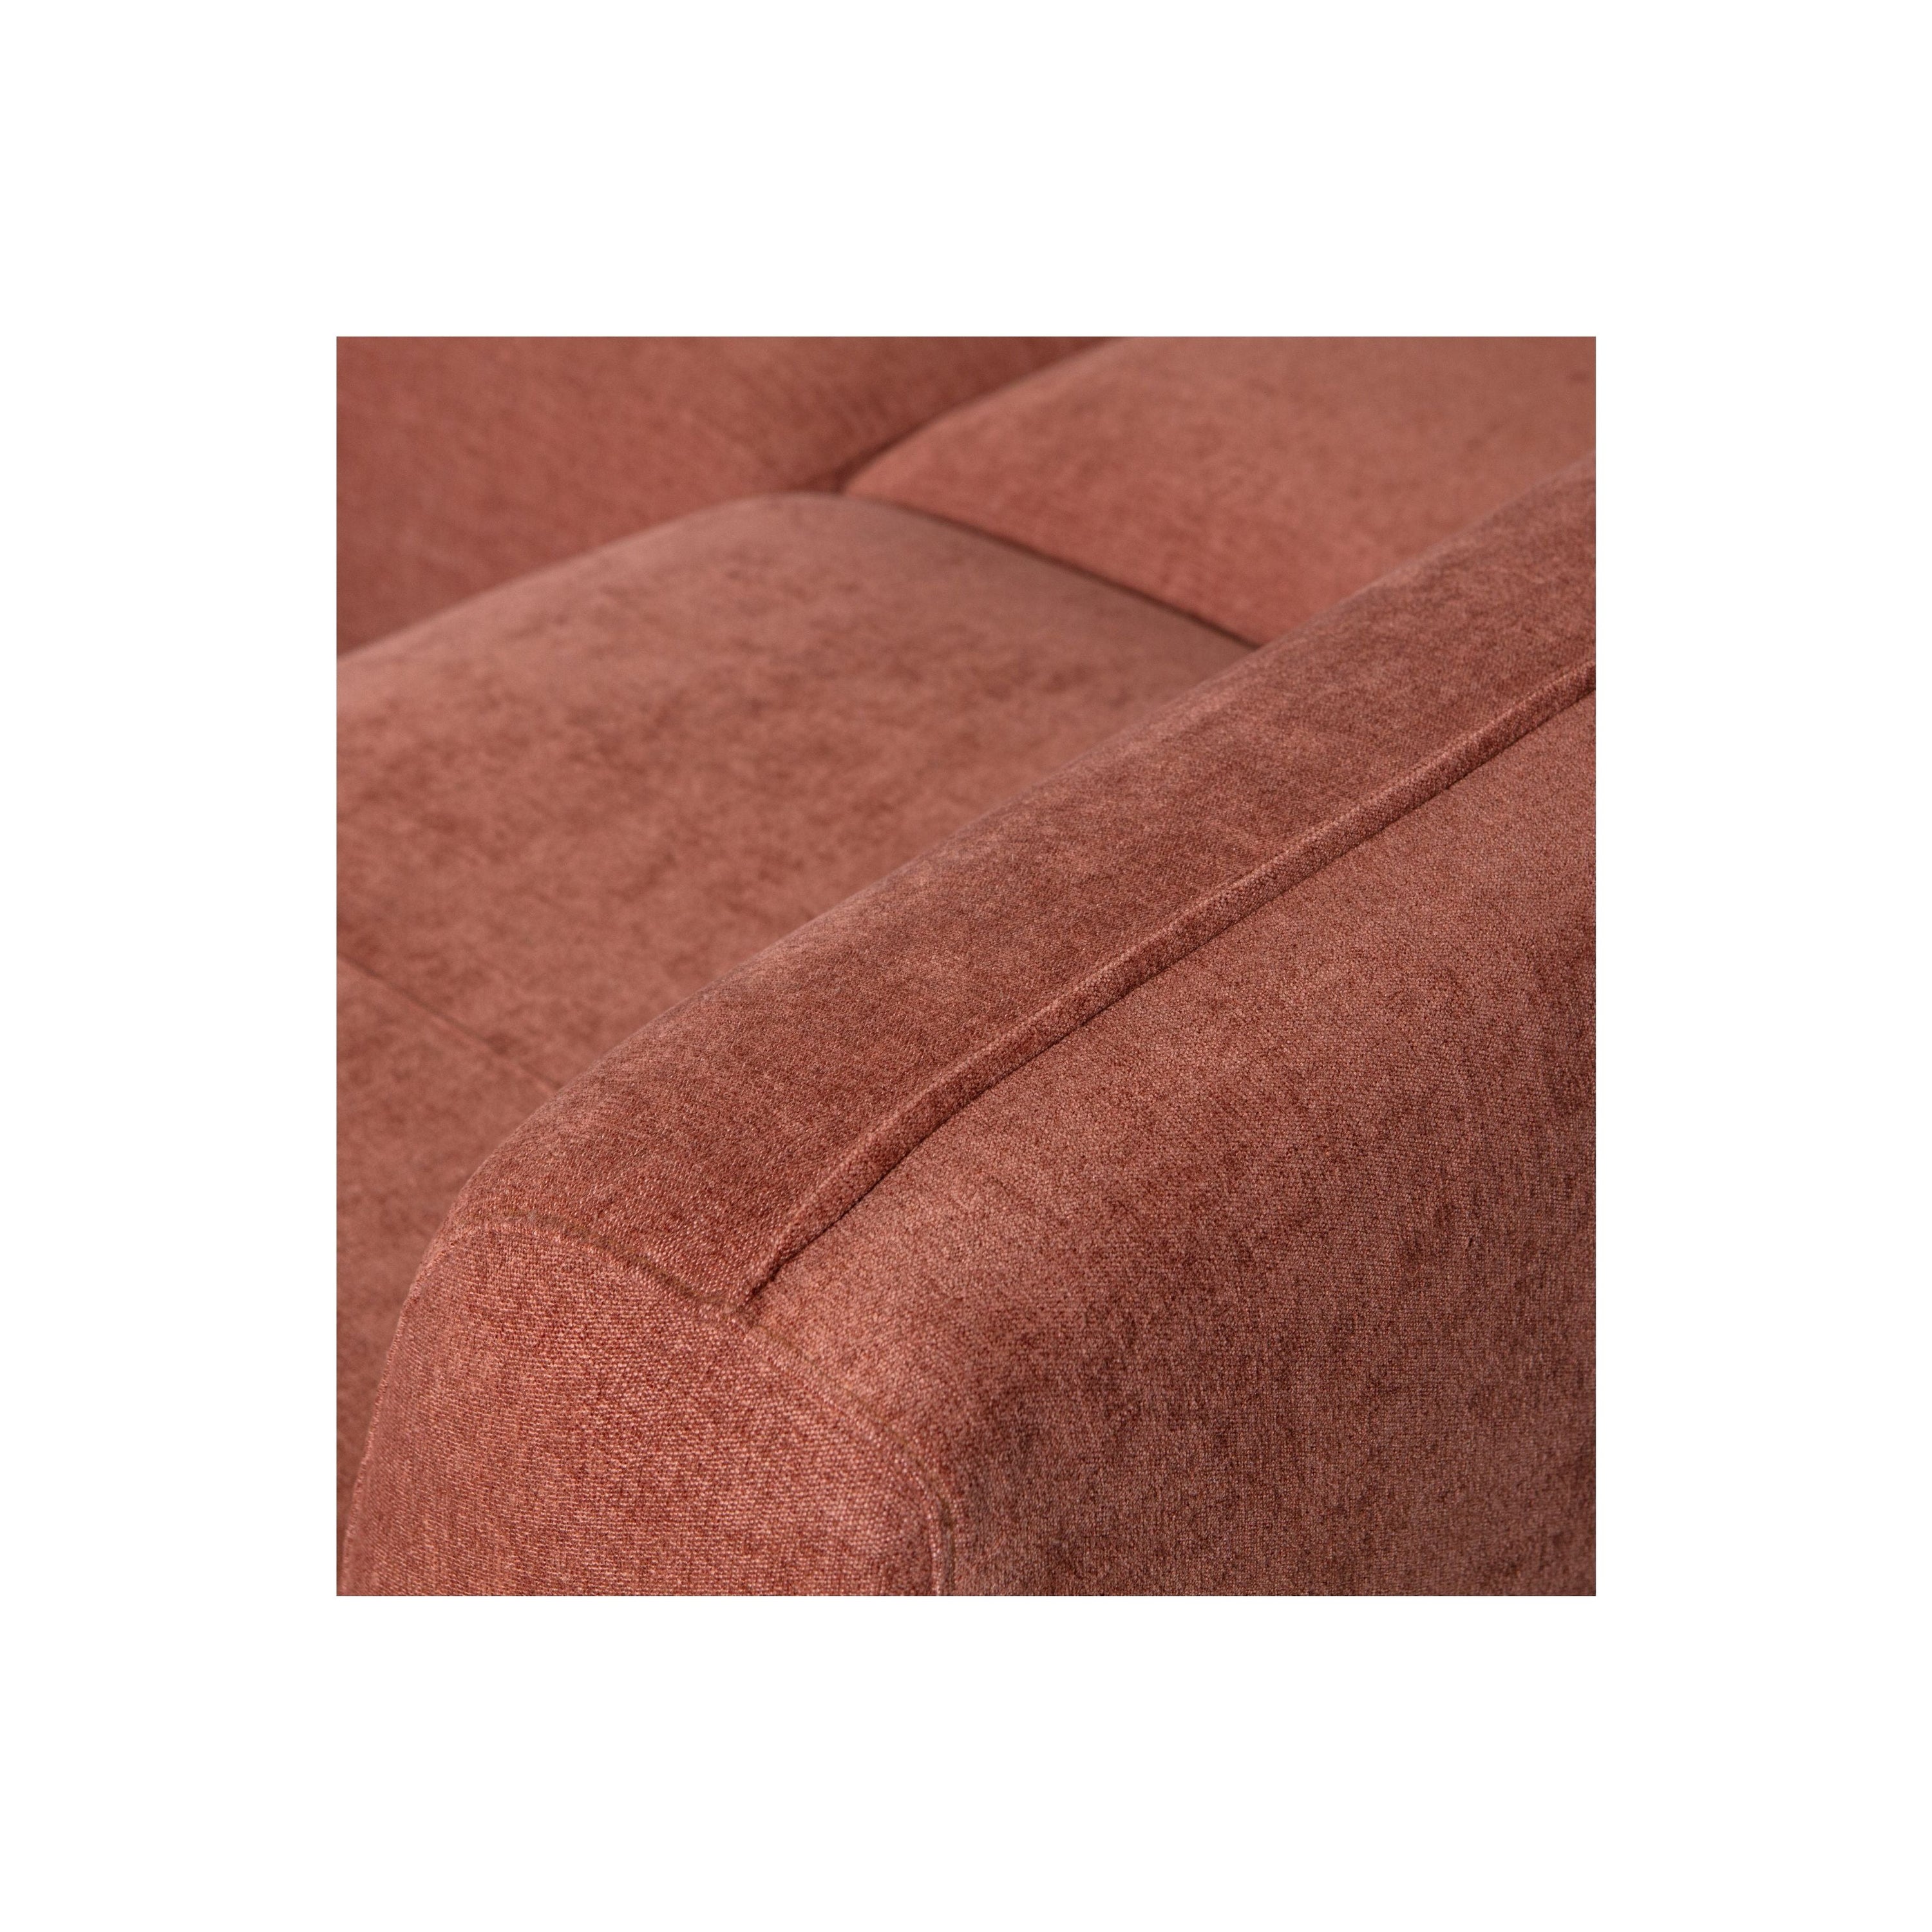 "Polly" dešinės pusės kampo sofa, U formos, rožinė spalva